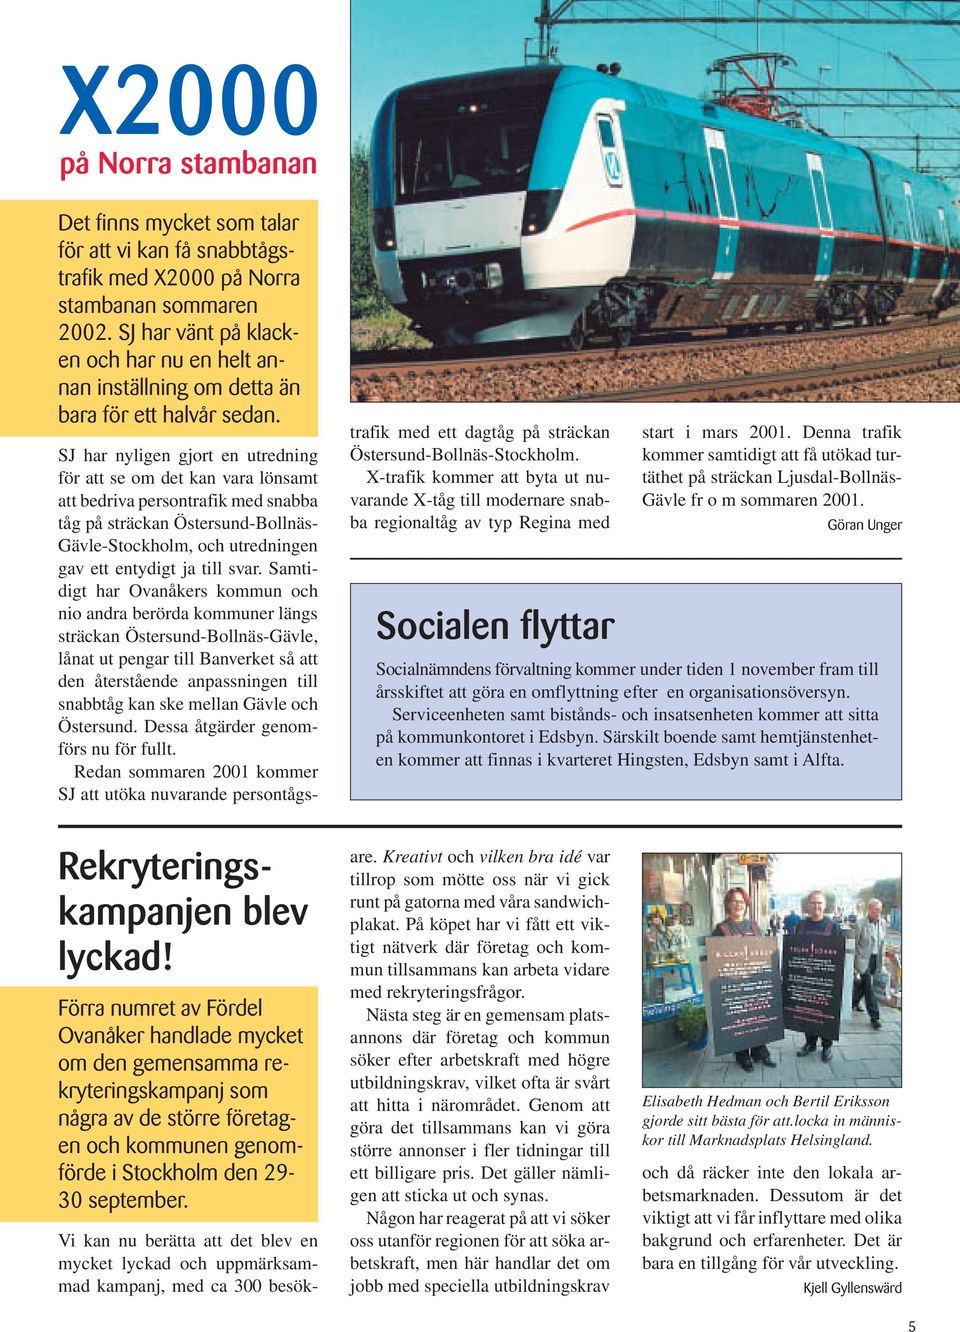 SJ har nyligen gjort en utredning för att se om det kan vara lönsamt att bedriva persontrafik med snabba tåg på sträckan Östersund-Bollnäs- Gävle-Stockholm, och utredningen gav ett entydigt ja till